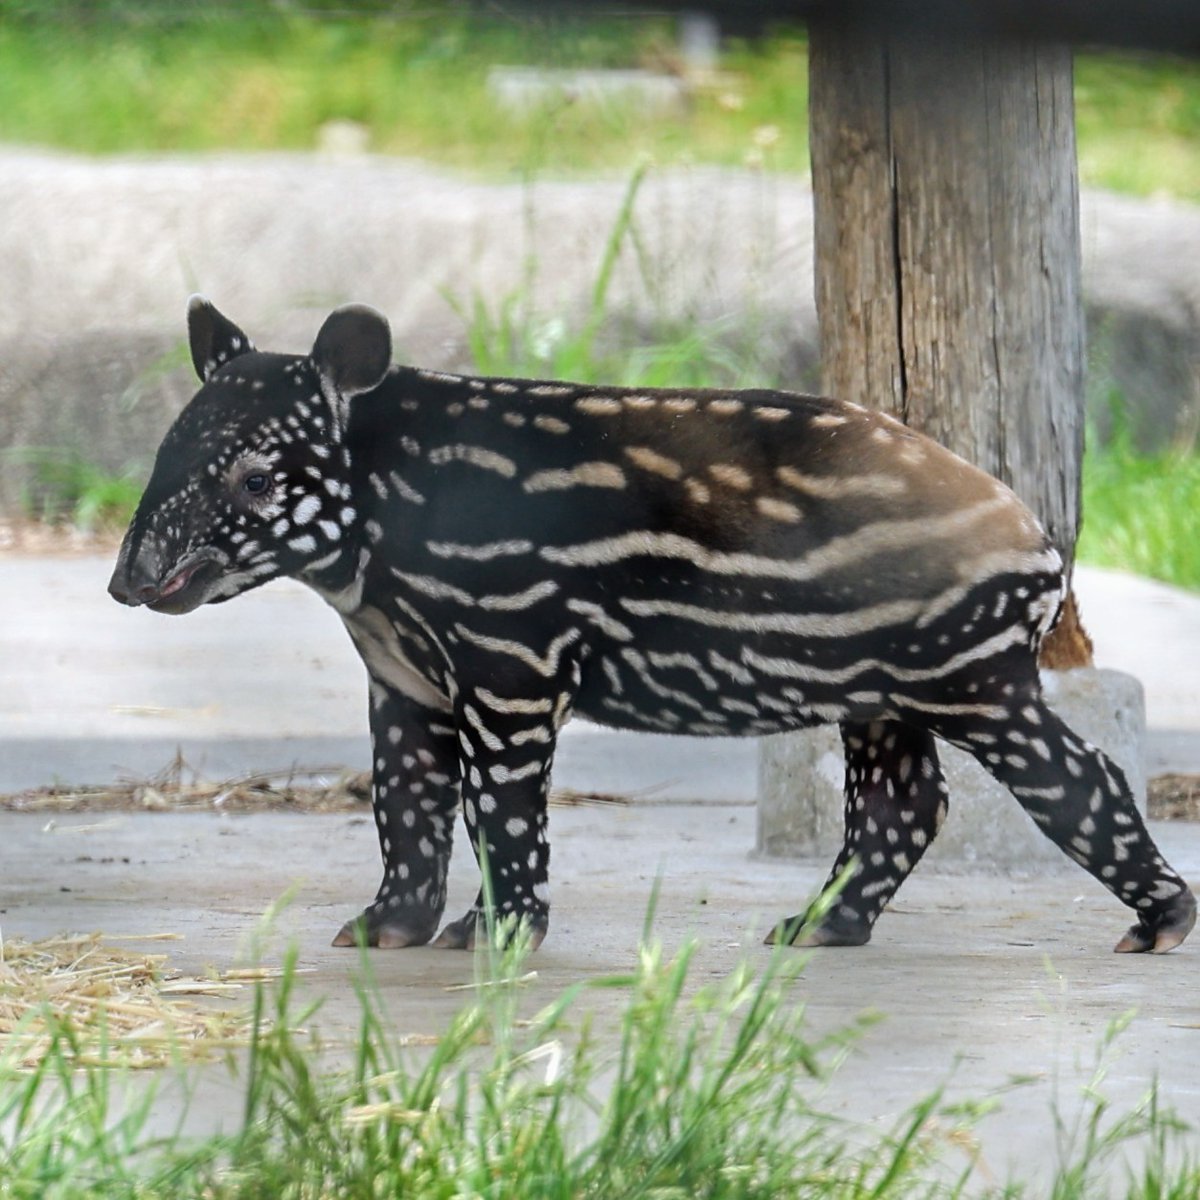 お名前発表されたね🤗
【まこも】くん💚宜しくね❣
飼育員さんの想いの込もった名前✨

まこも♂
2024年4月3日生まれ
父ヒカル　母ワカバ
2024/4/26㈮撮影📷
#マレーバク 
#まこも
#群馬サファリパーク
#tapirusindicus 
#malayantapir